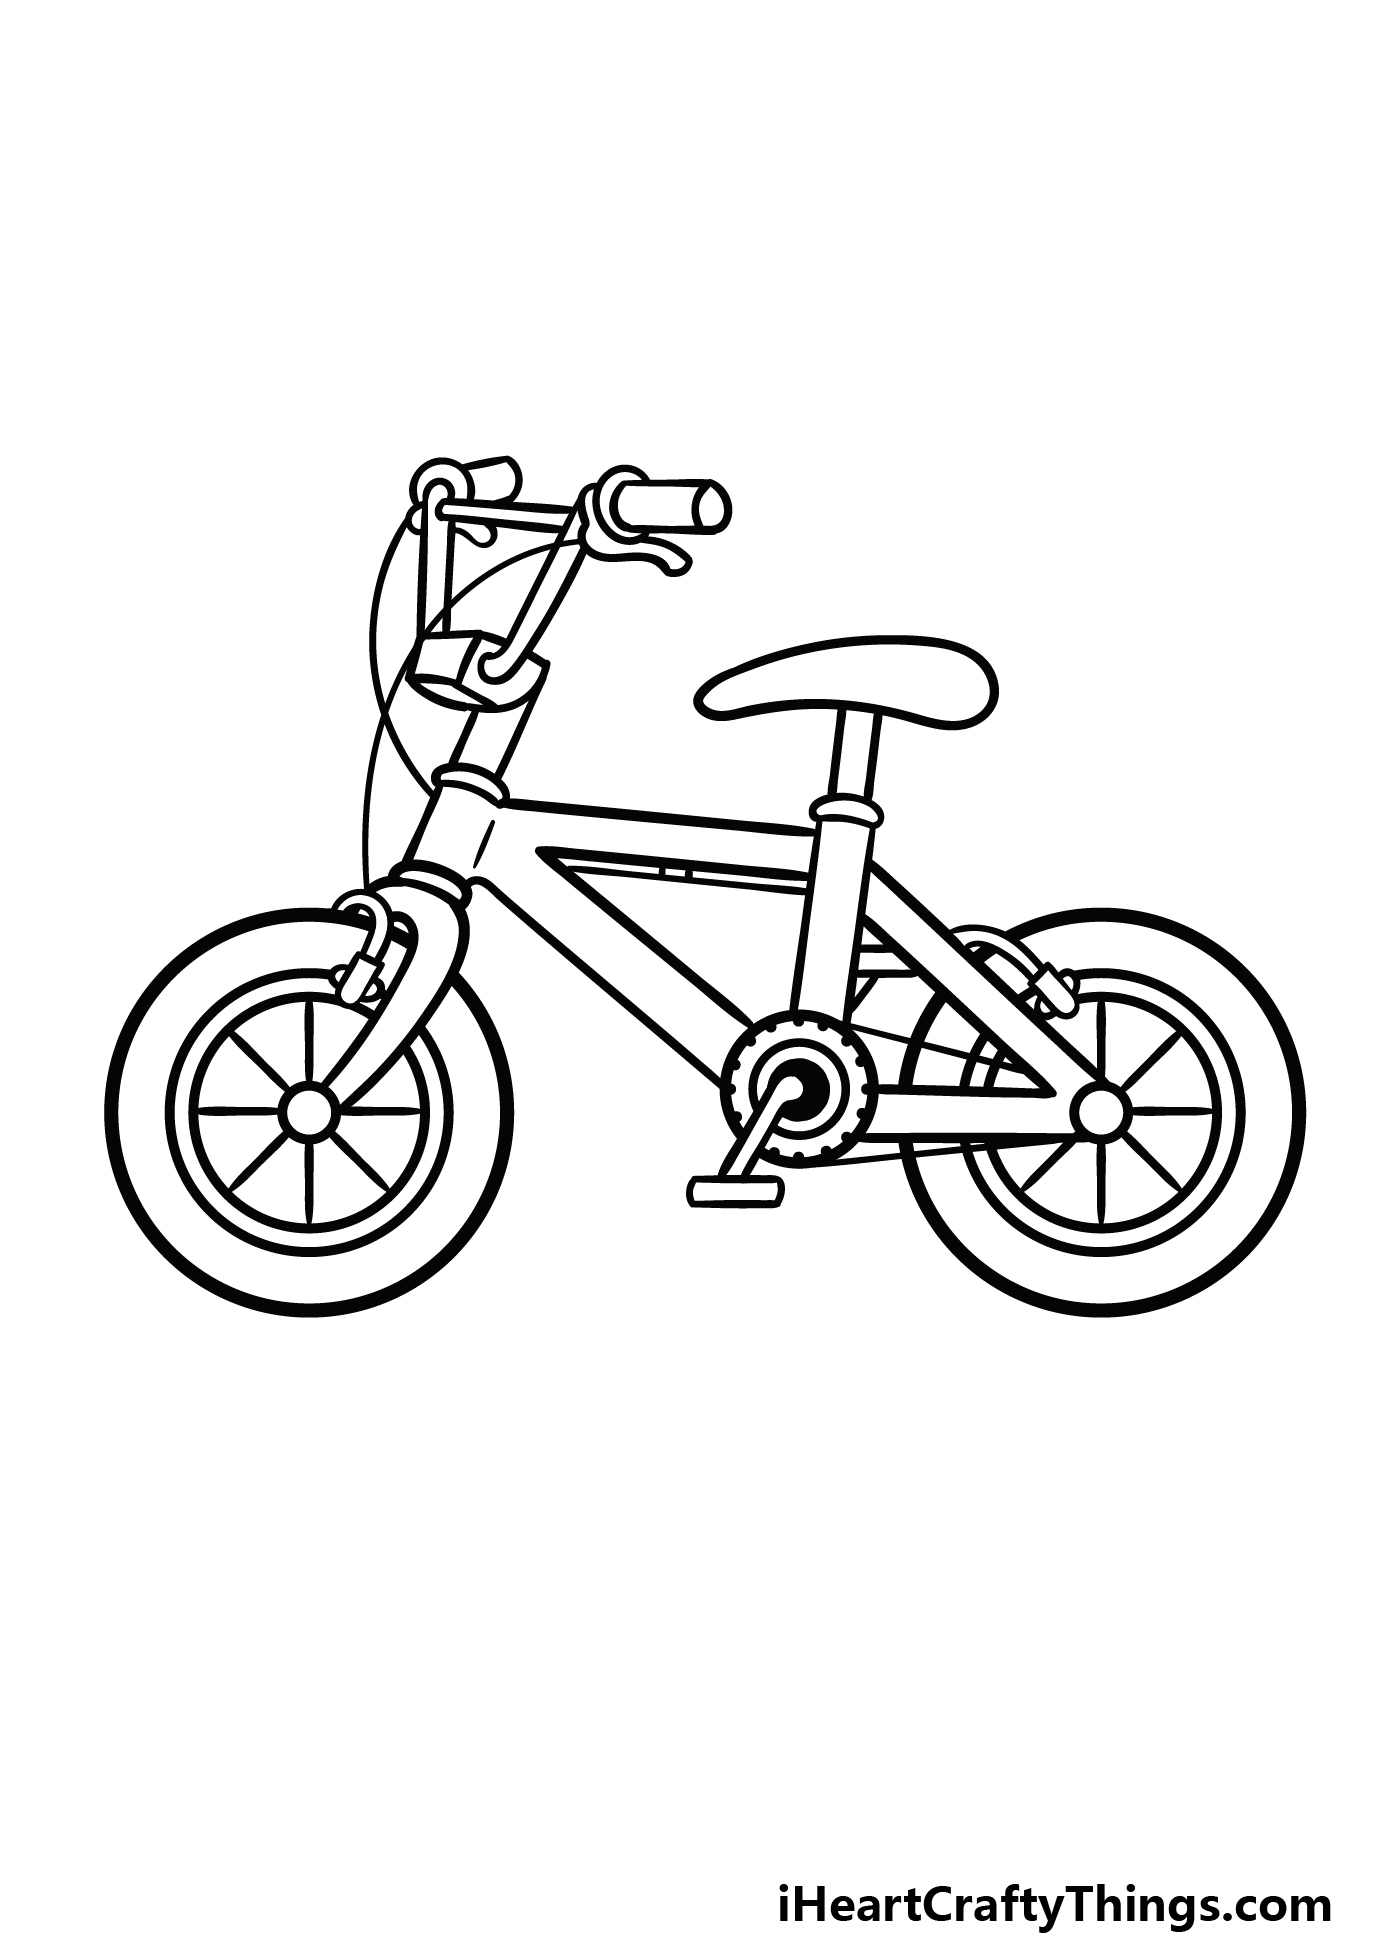 Bike Sketch 22.08.2015 - YouTube-as247.edu.vn